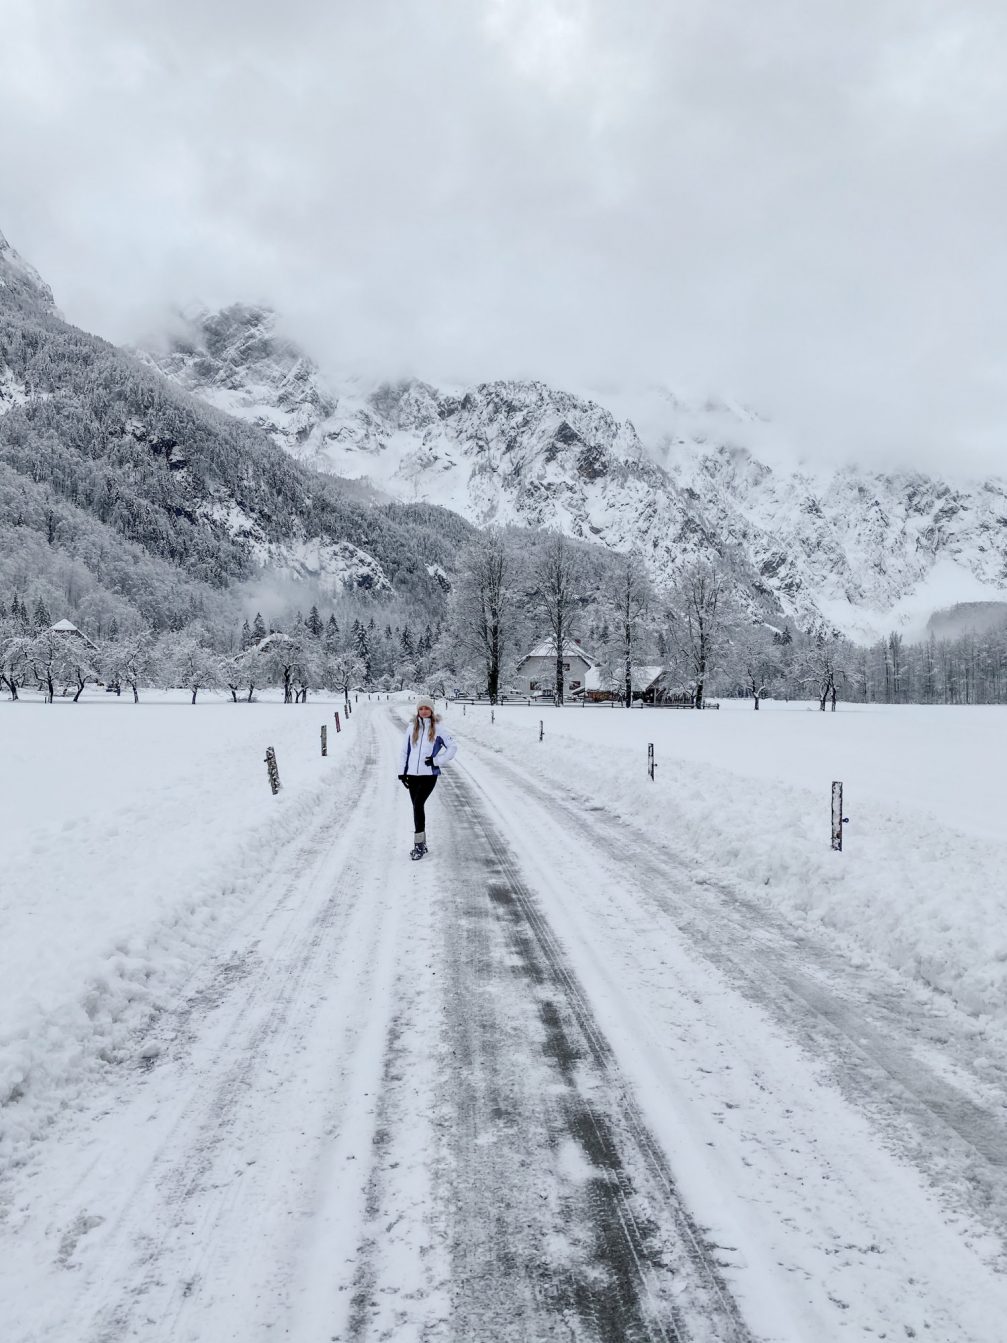 Logarska Valley in Slovenia covered in snow in winter